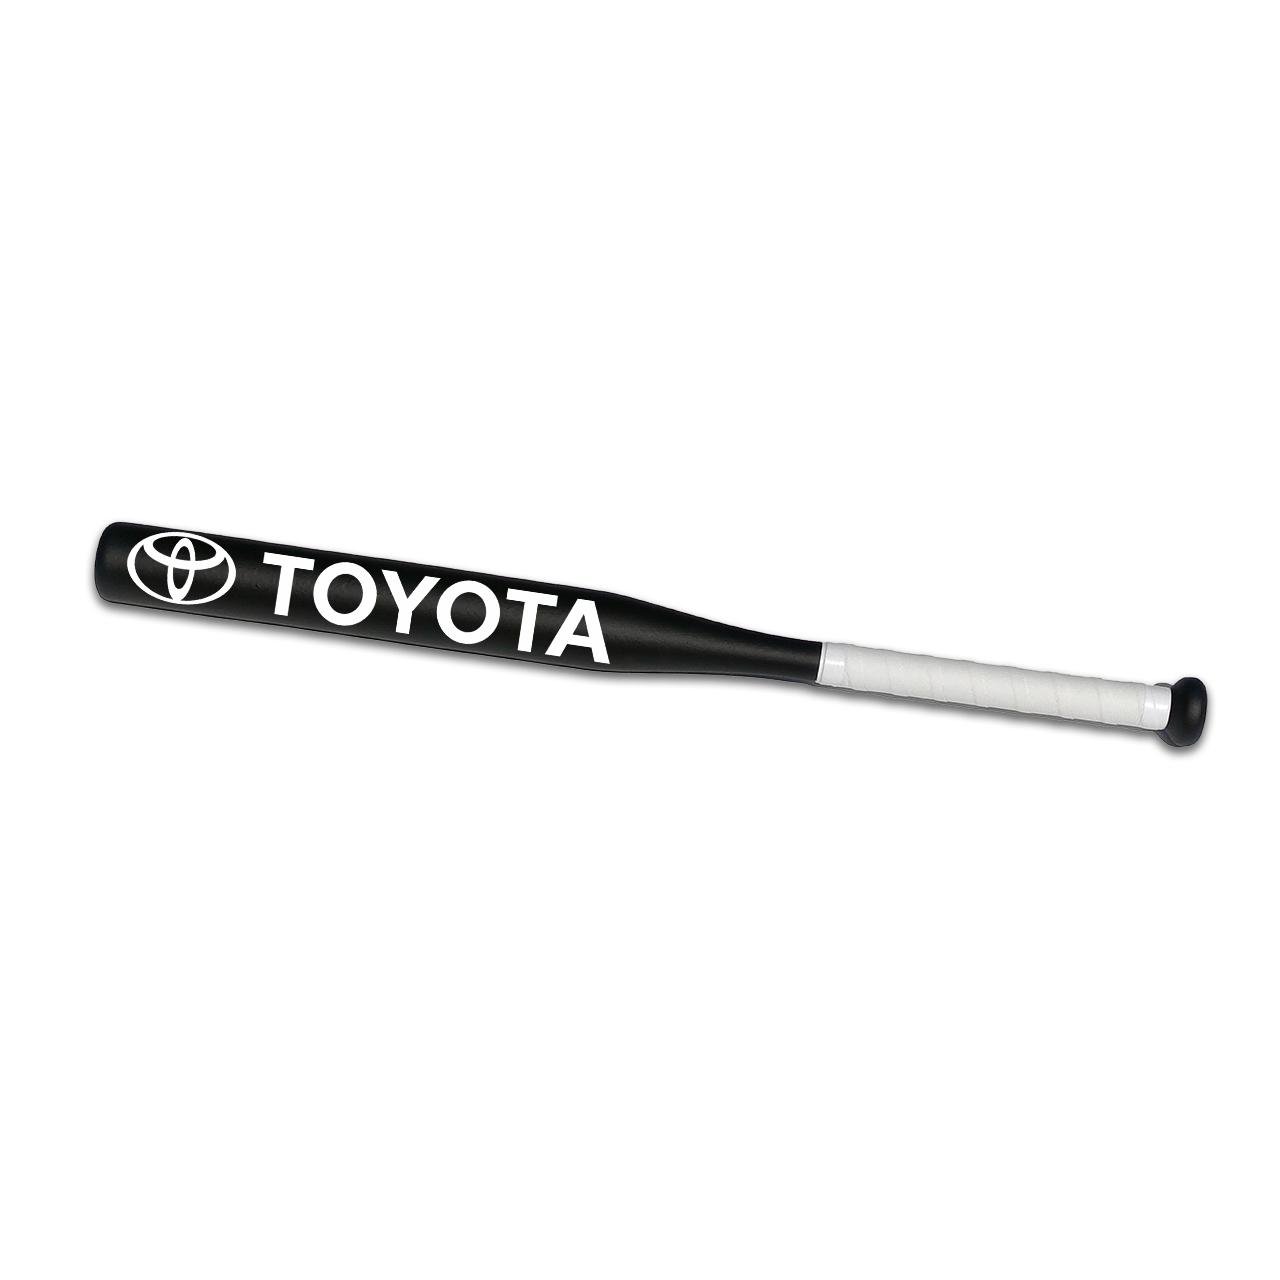 Біта бейсбольна Avtobita Toyota з чохлом Чорний/Білий (BB-Toy-00154)